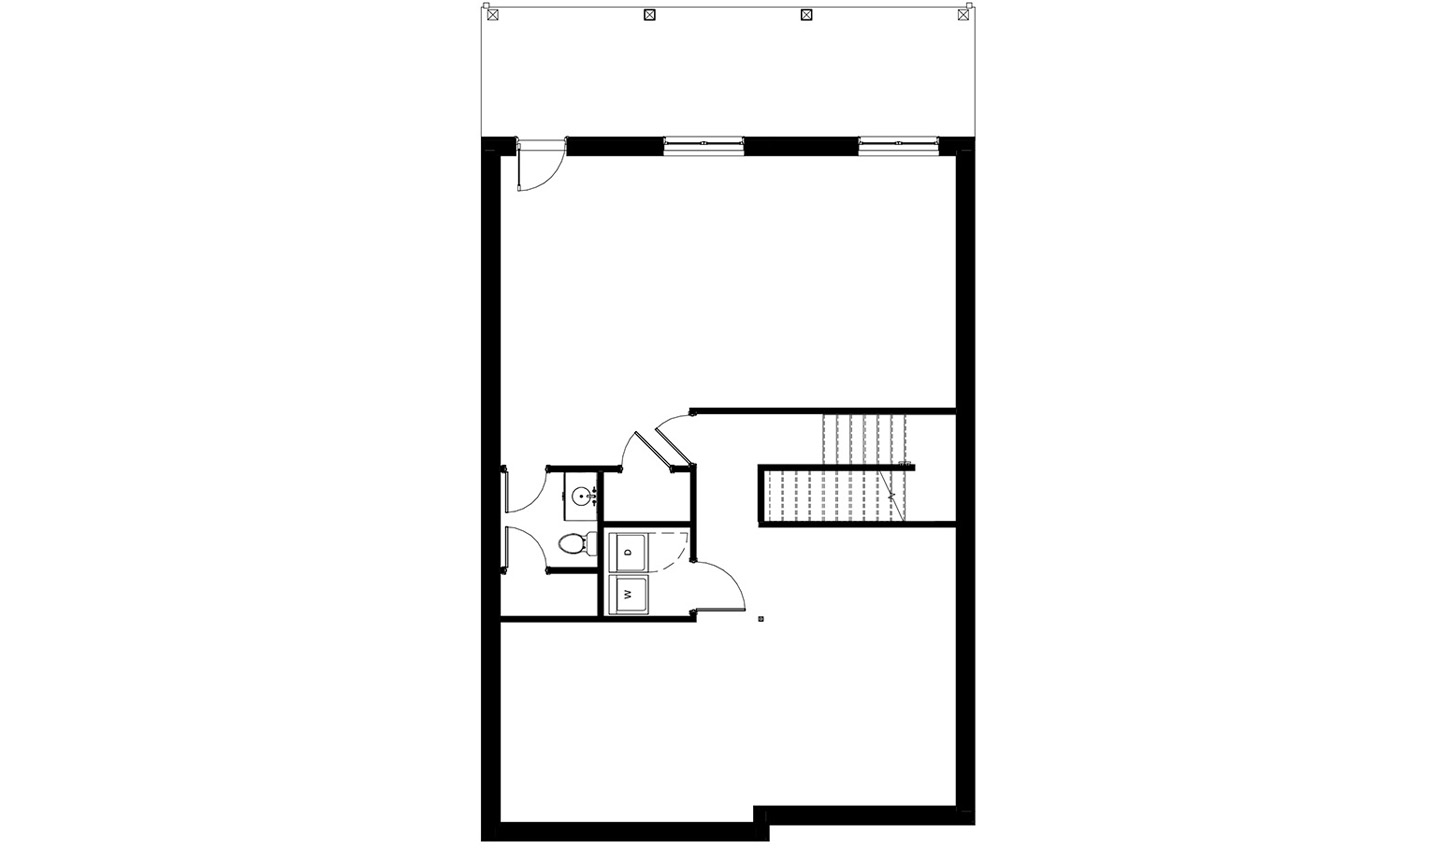 Floor plan of the 5 bedroom lower level floor plan